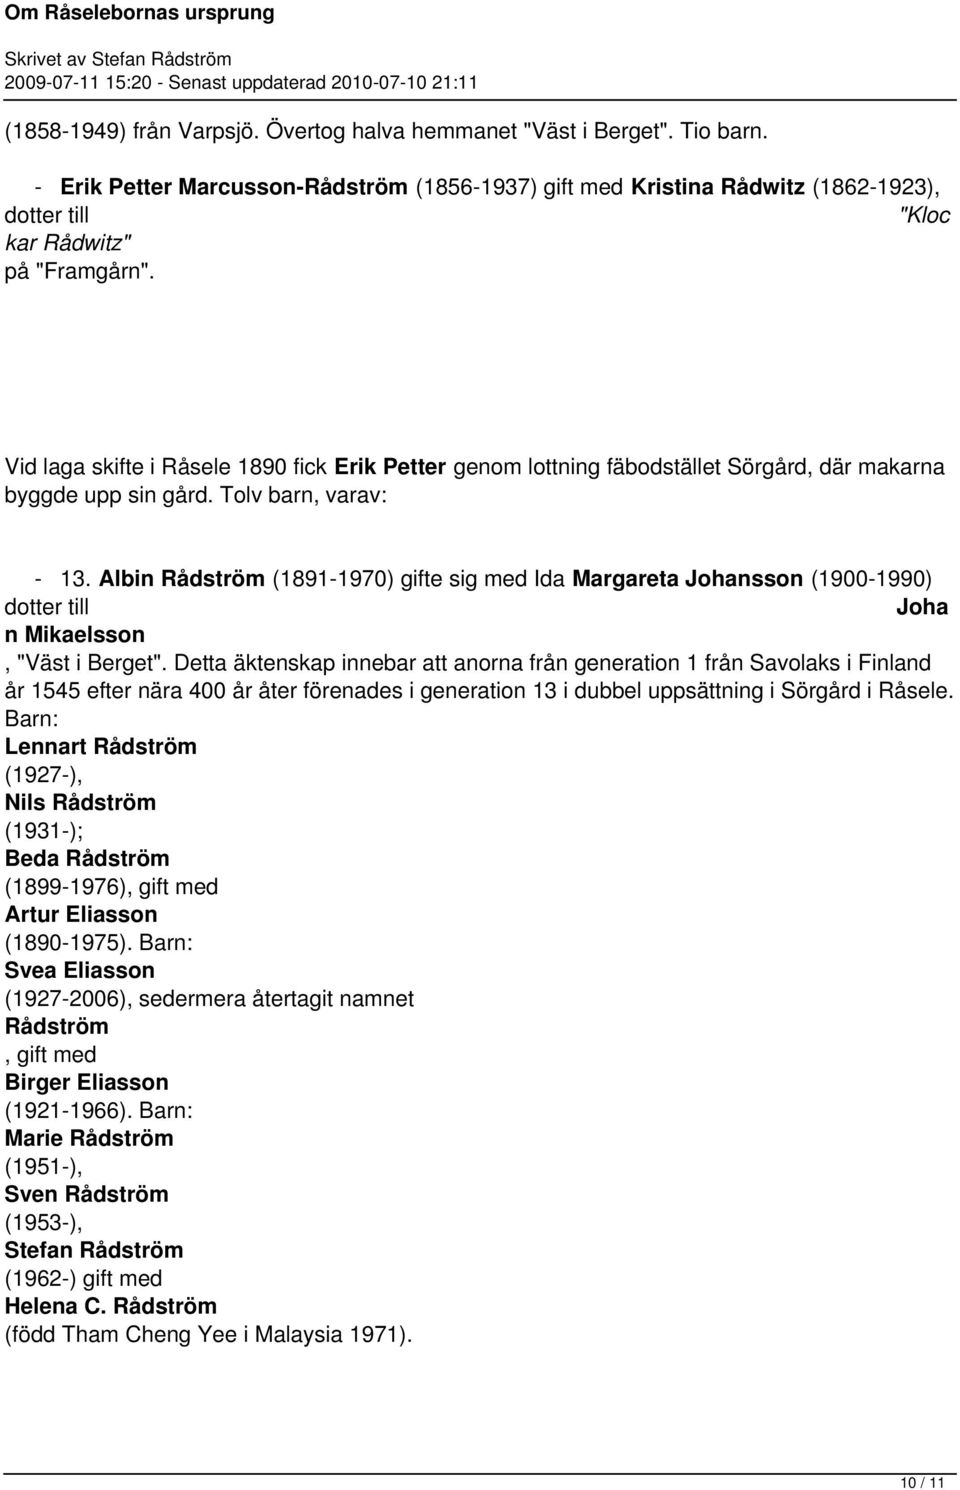 Margareta Johansson (1900-1990) dotter till Joha n Mikaelsson, "Väst i Berget" Detta äktenskap innebar att anorna från generation 1 från Savolaks i Finland år 1545 efter nära 400 år åter förenades i